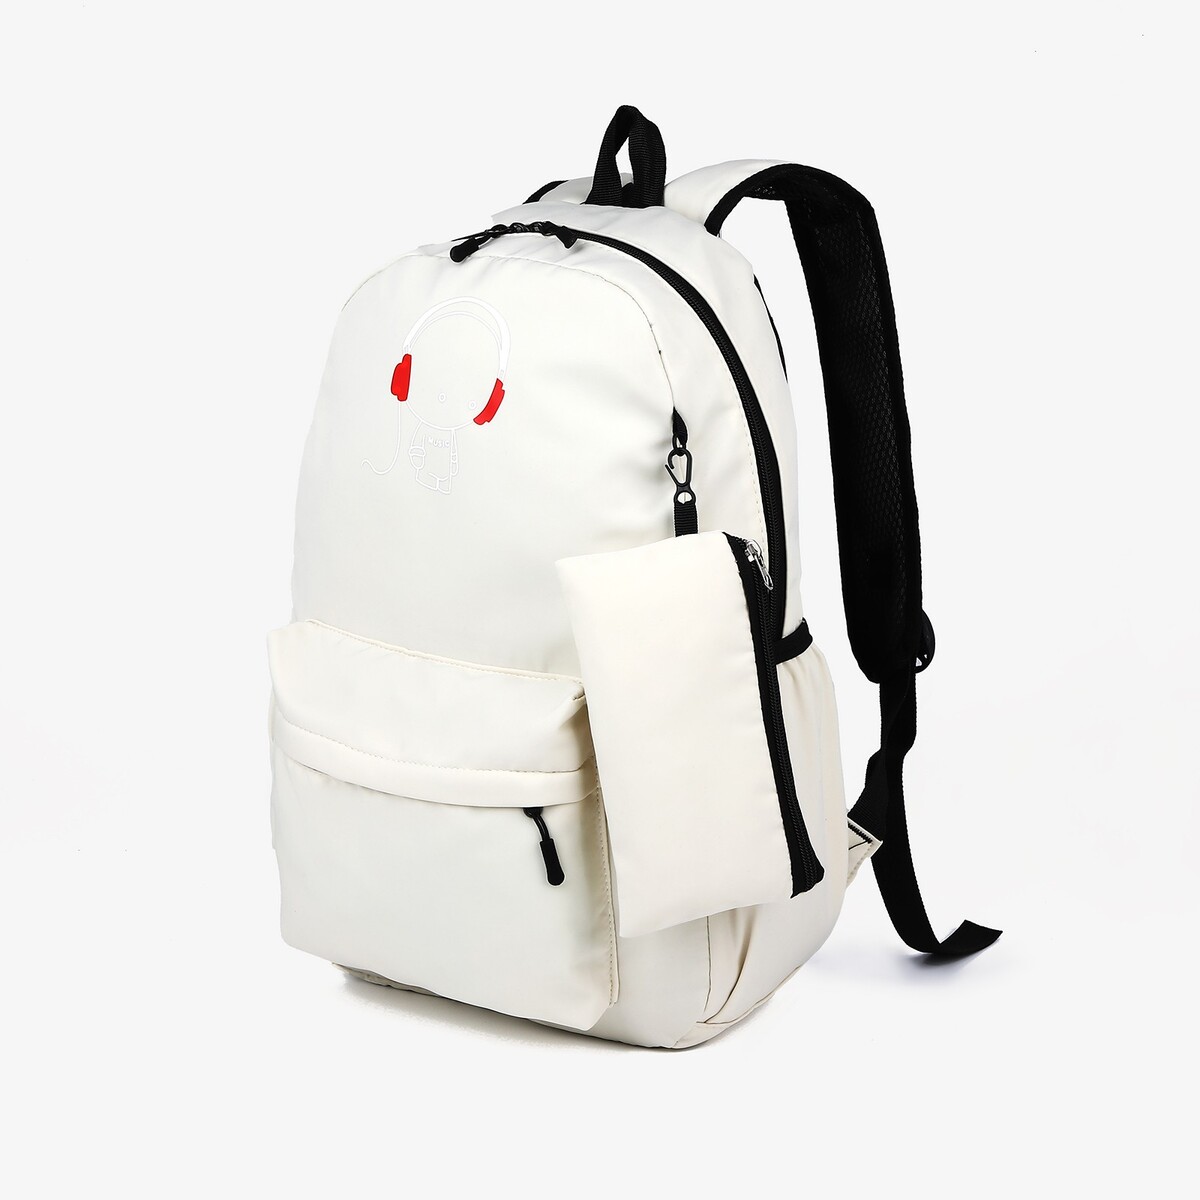 Рюкзак школьный из текстиля на молнии, 3 кармана, кошелек, цвет белый